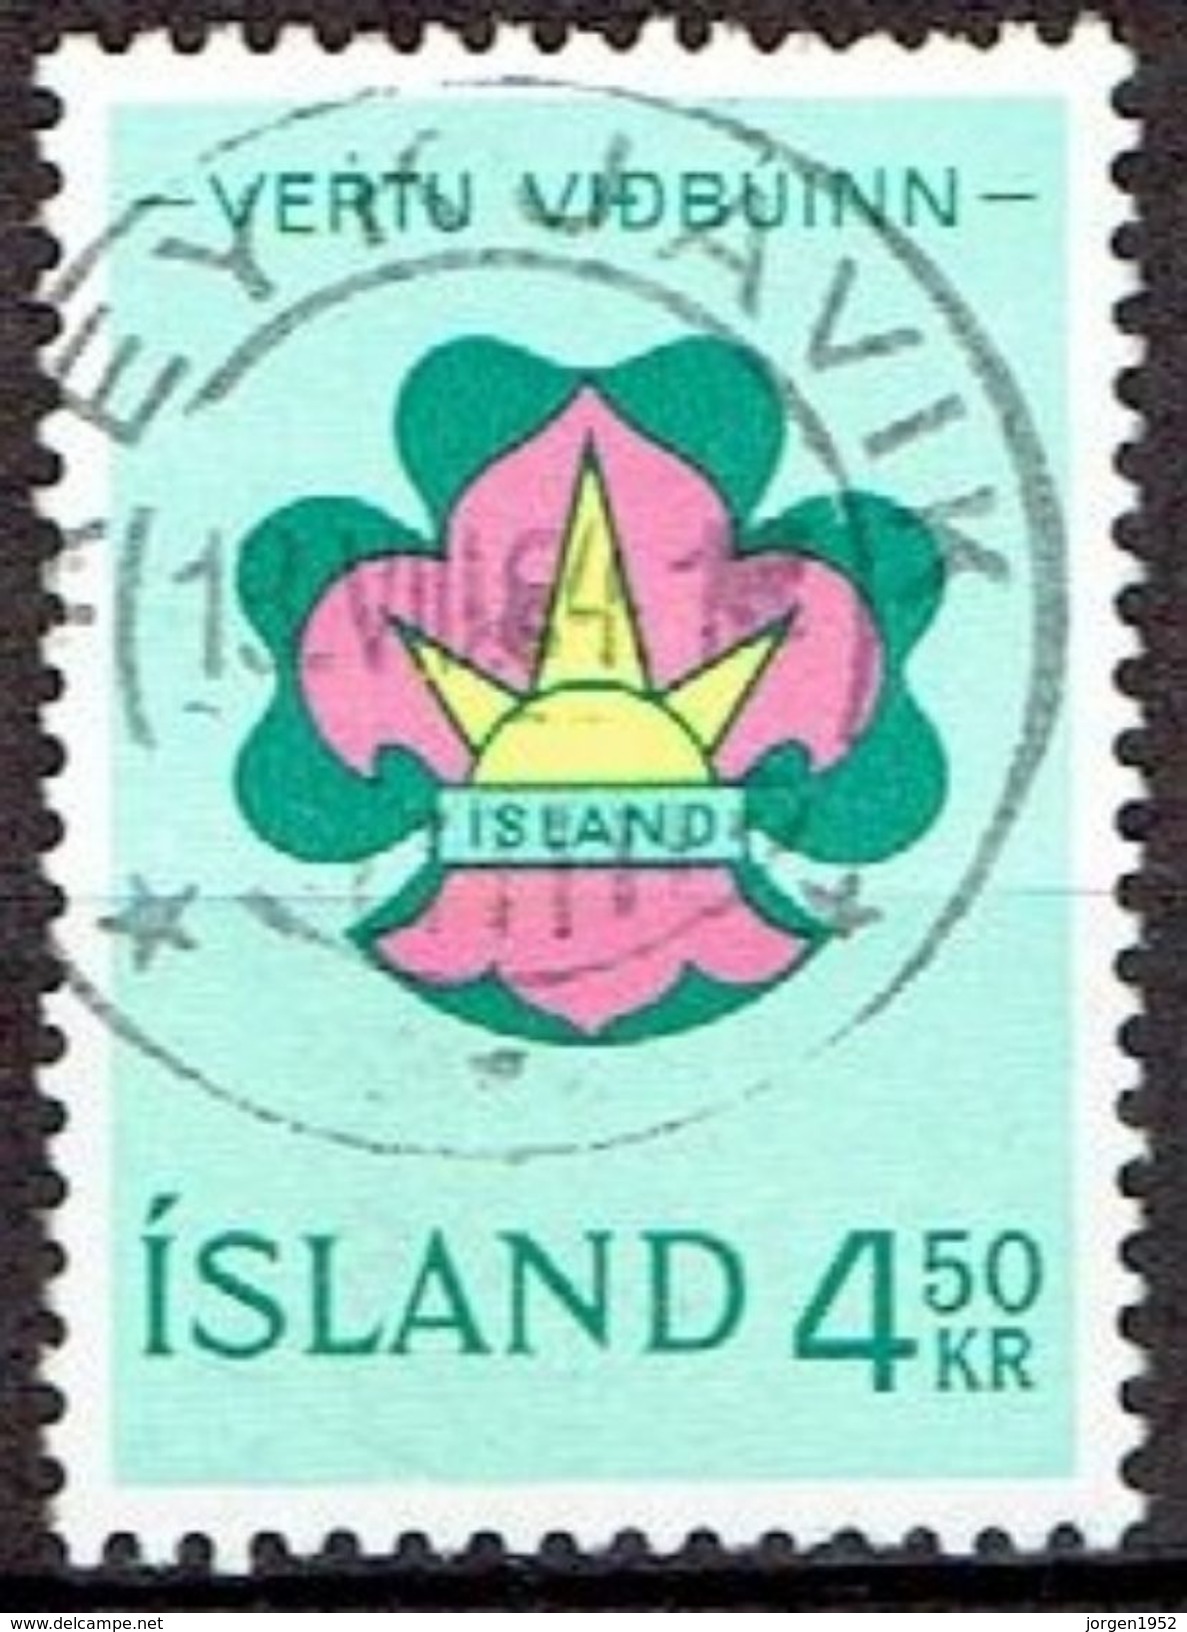 ICELAND  #   FROM 1964 STAMPWORLD 380 - Gebraucht